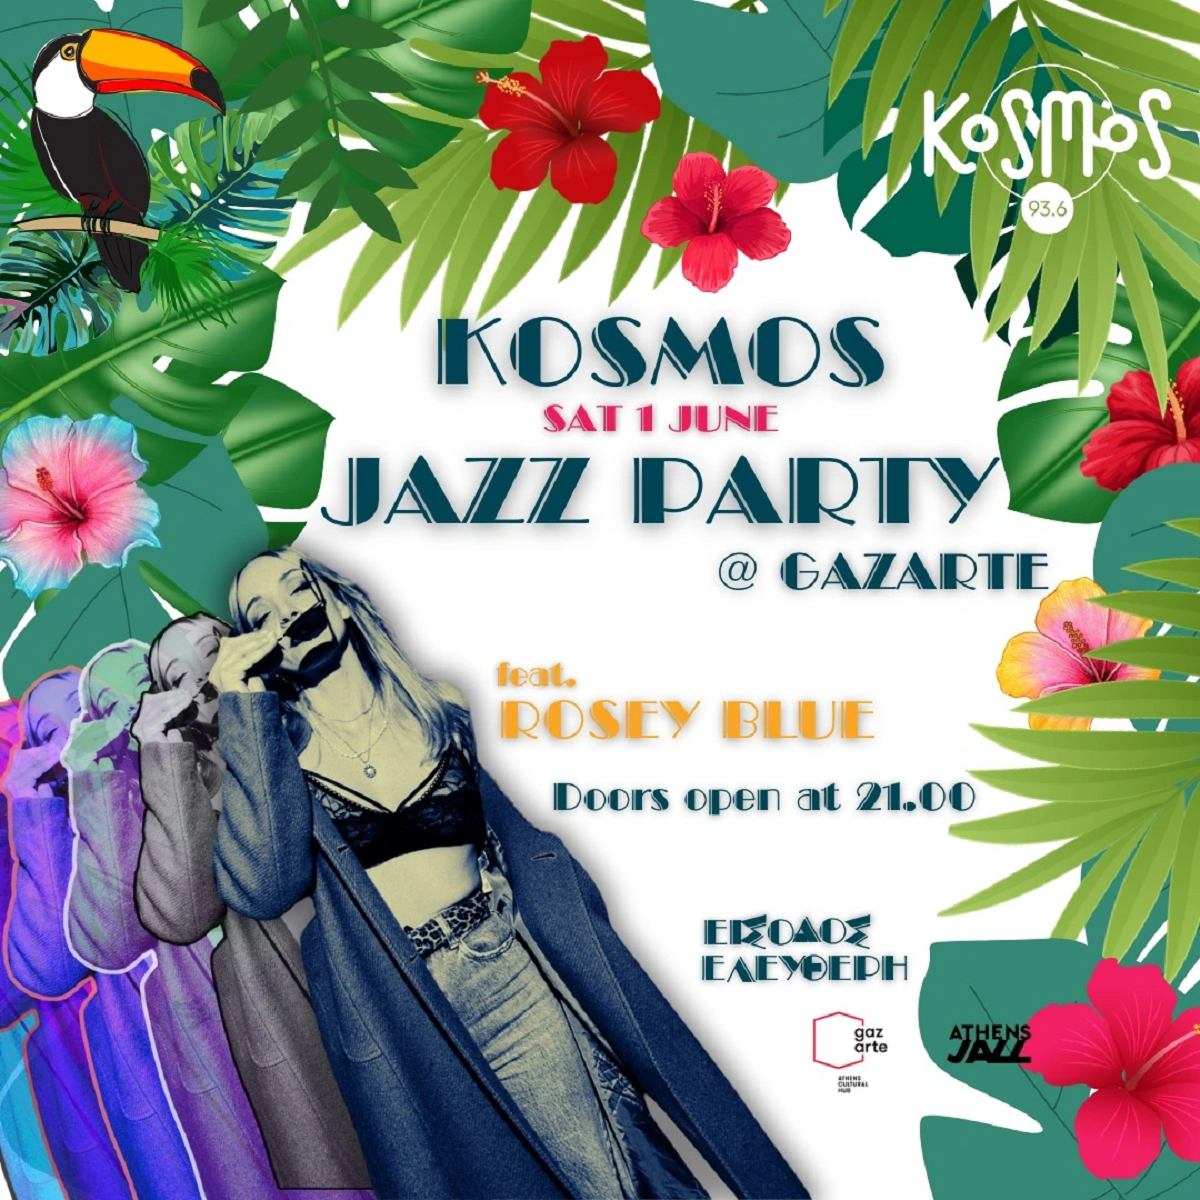 Το Kosmos Jazz Party της χρονιάς στο Gazarte, με ελεύθερη είσοδο